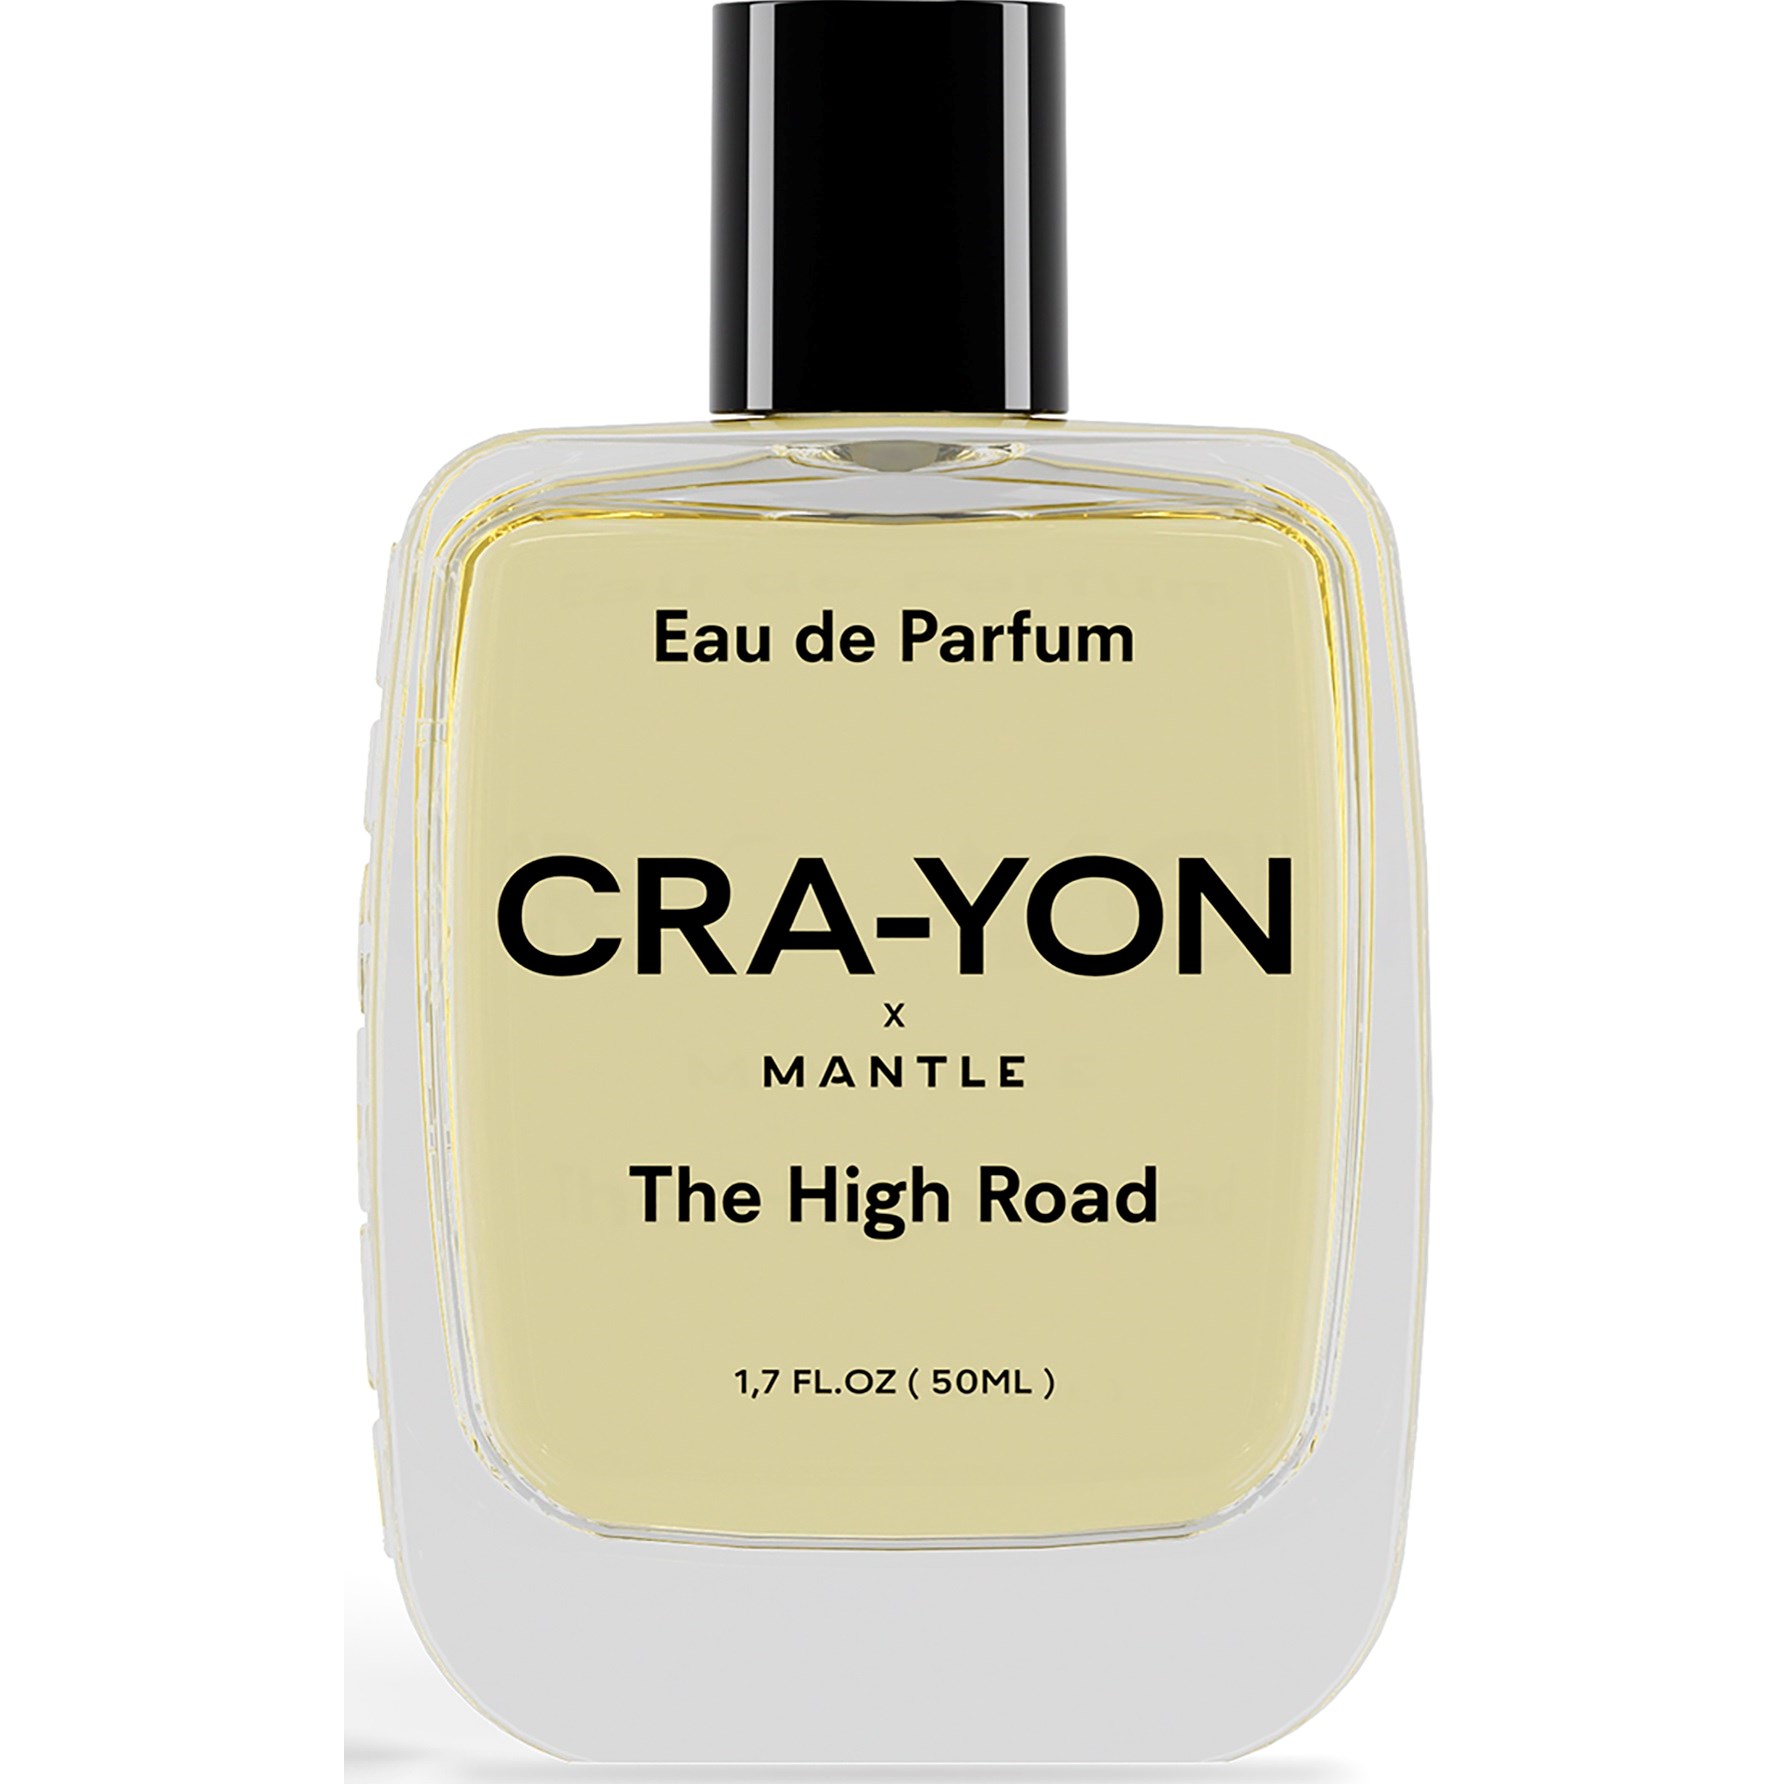 CRA-YON x MANTLE The High Road Eau de Parfum 50 ml